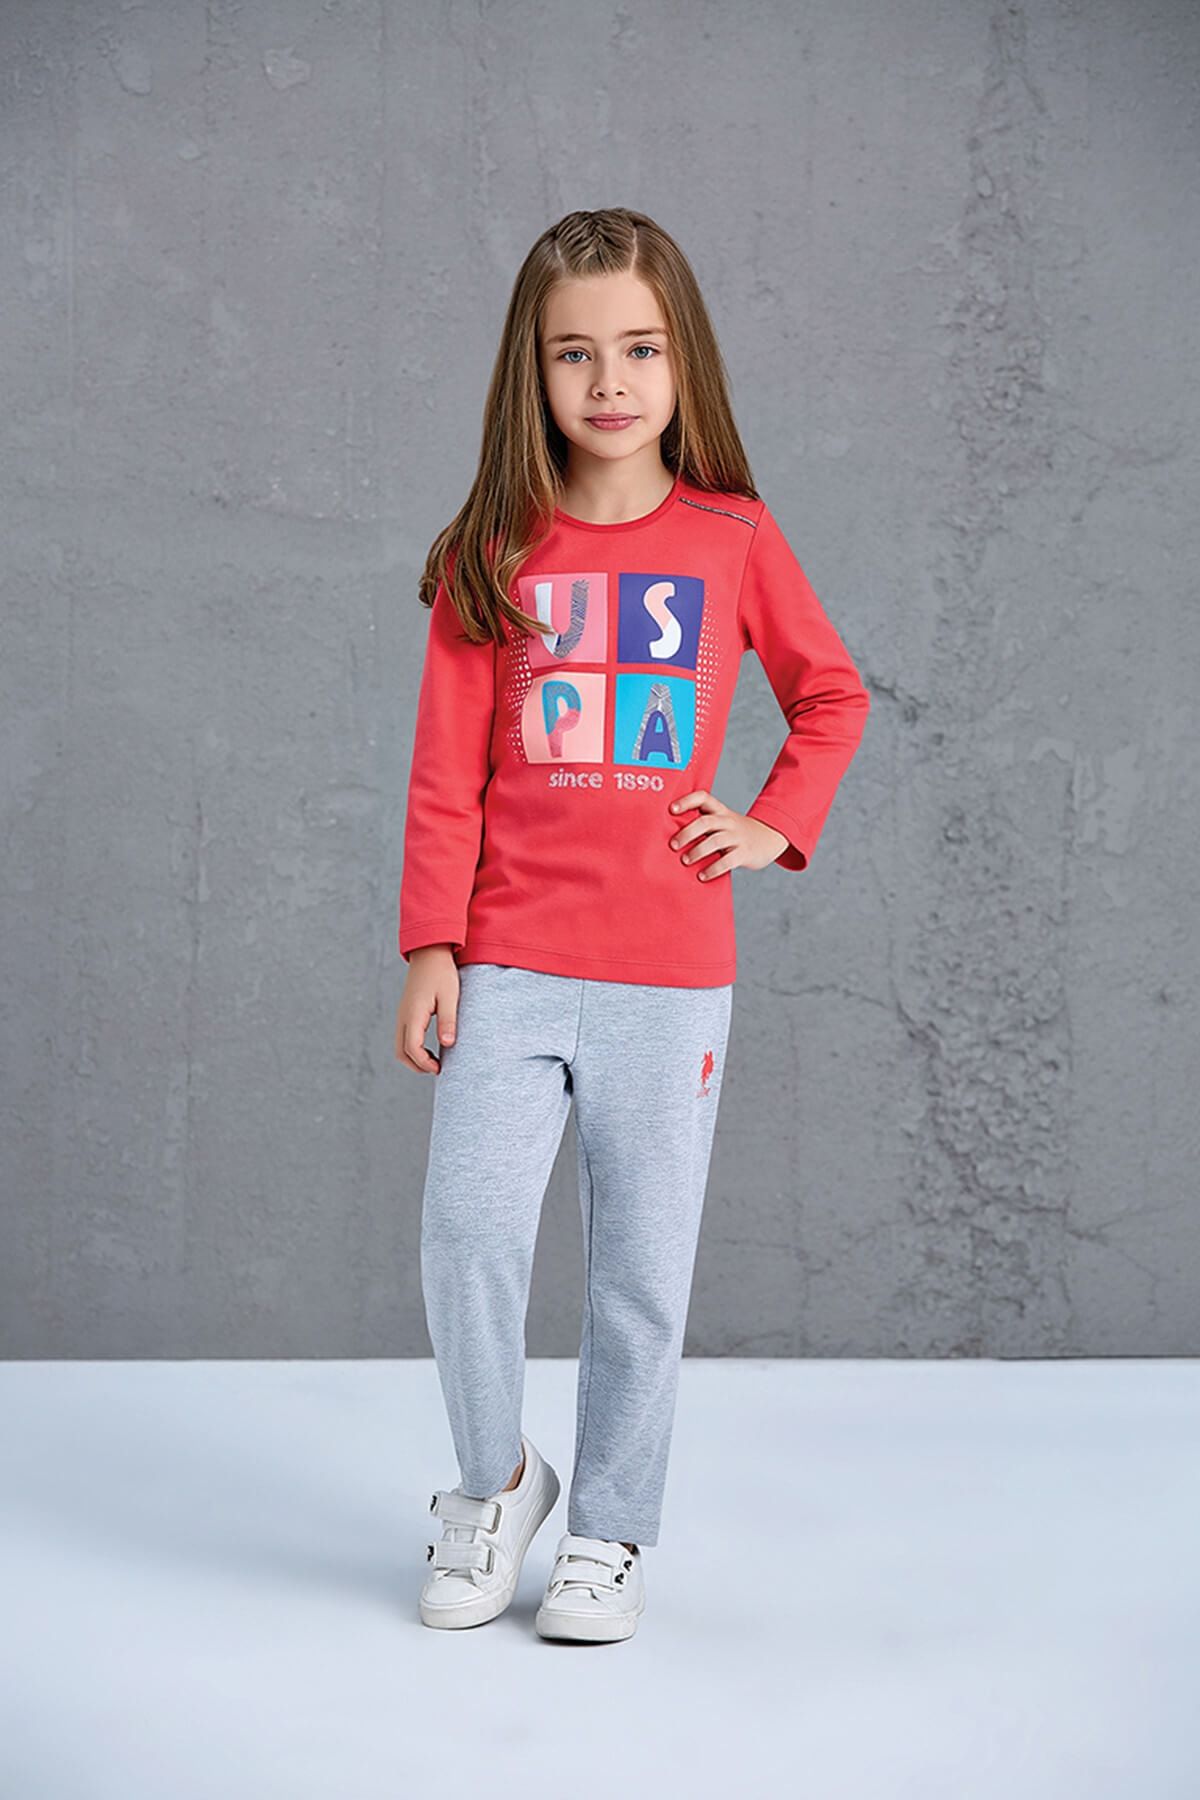 U.S. Polo Assn. Assn Lisanslı Kız Çocuk Pijama Takımı Nar Çiçeği